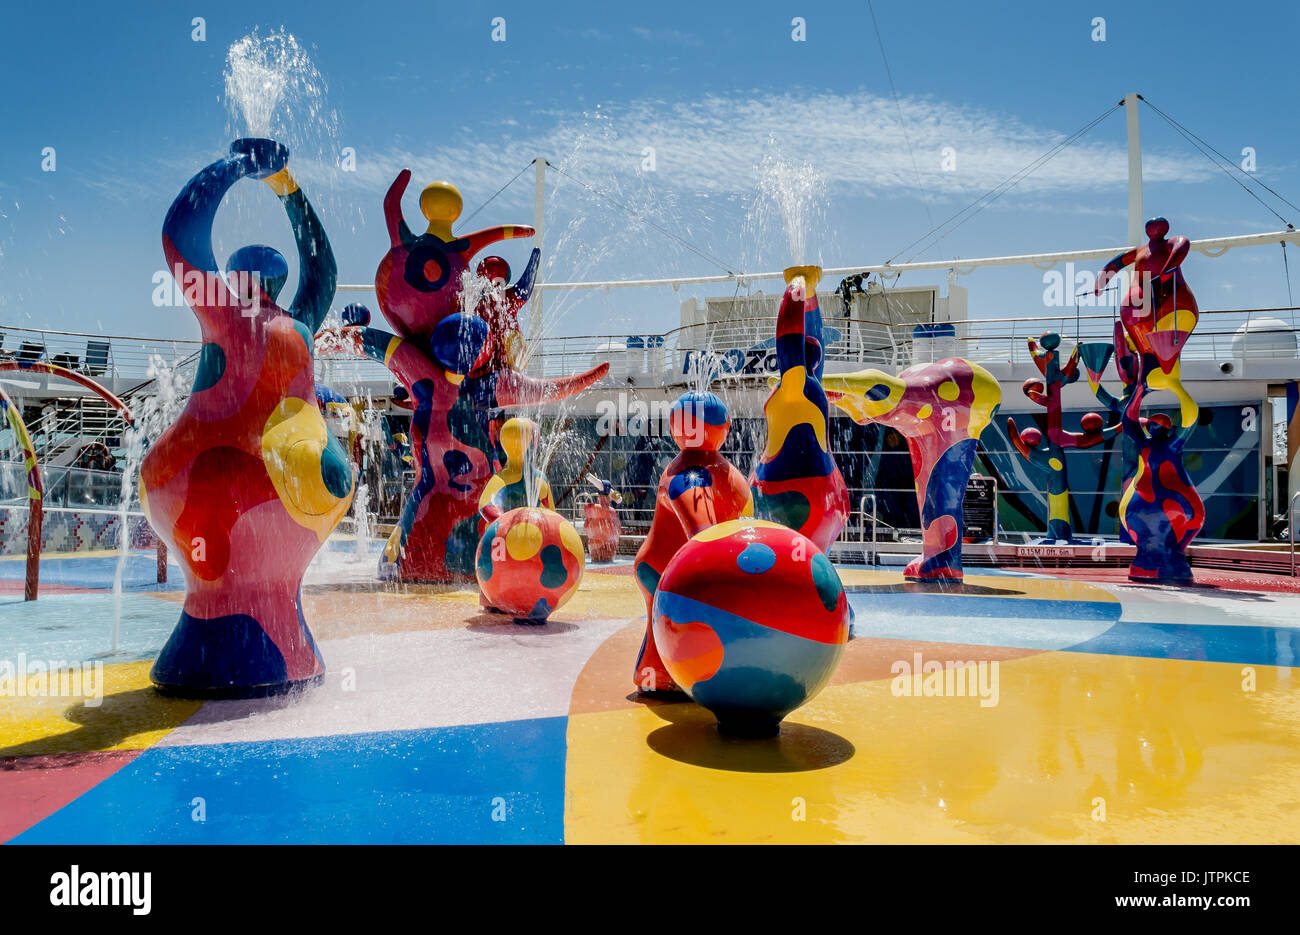 H2O Zone, la liberté des mers, Royal Caribbean International - Barcelone, Espagne - 07 mai 2017 : fontaines colorées d'un parc aquatique pour enfants sur une croisière Banque D'Images